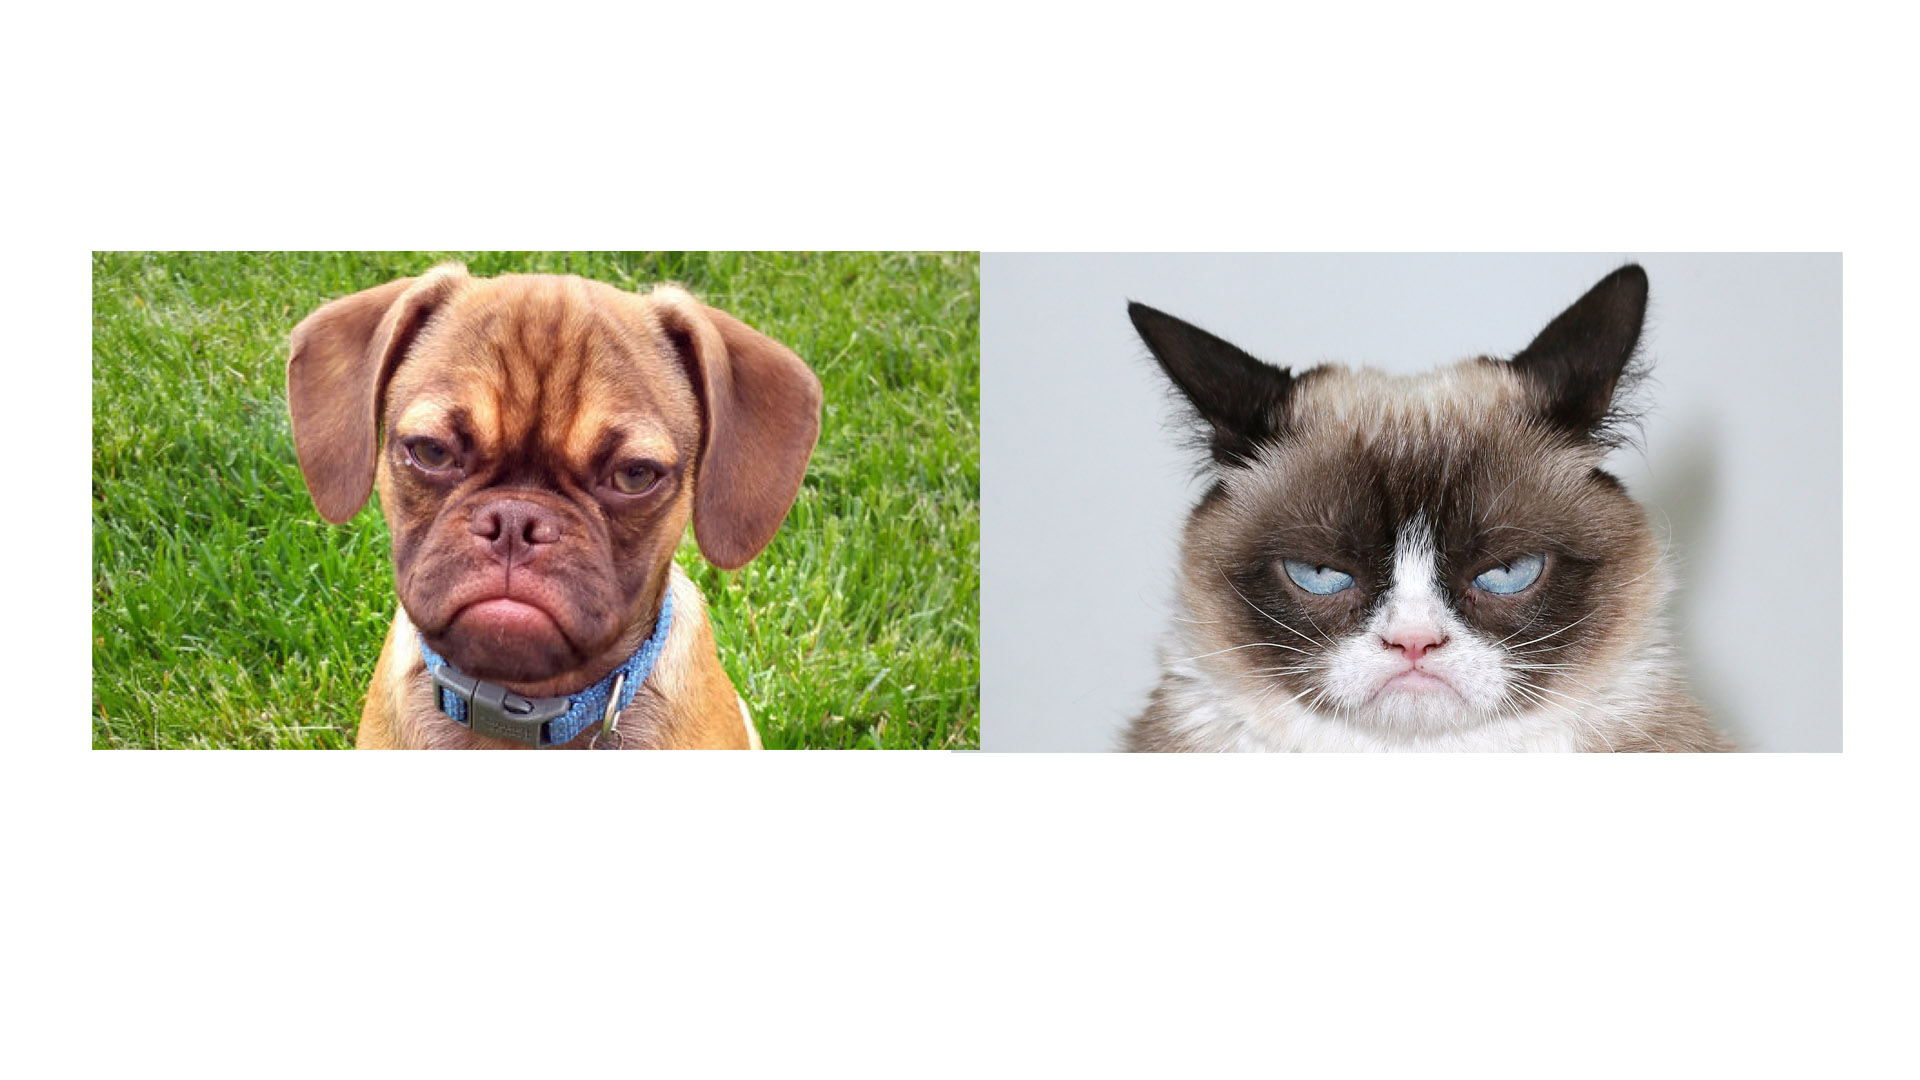 Earl es el grumpy dog quien llega hacerle la competencia a la gata que invadió las redes sociales con su expresión facial